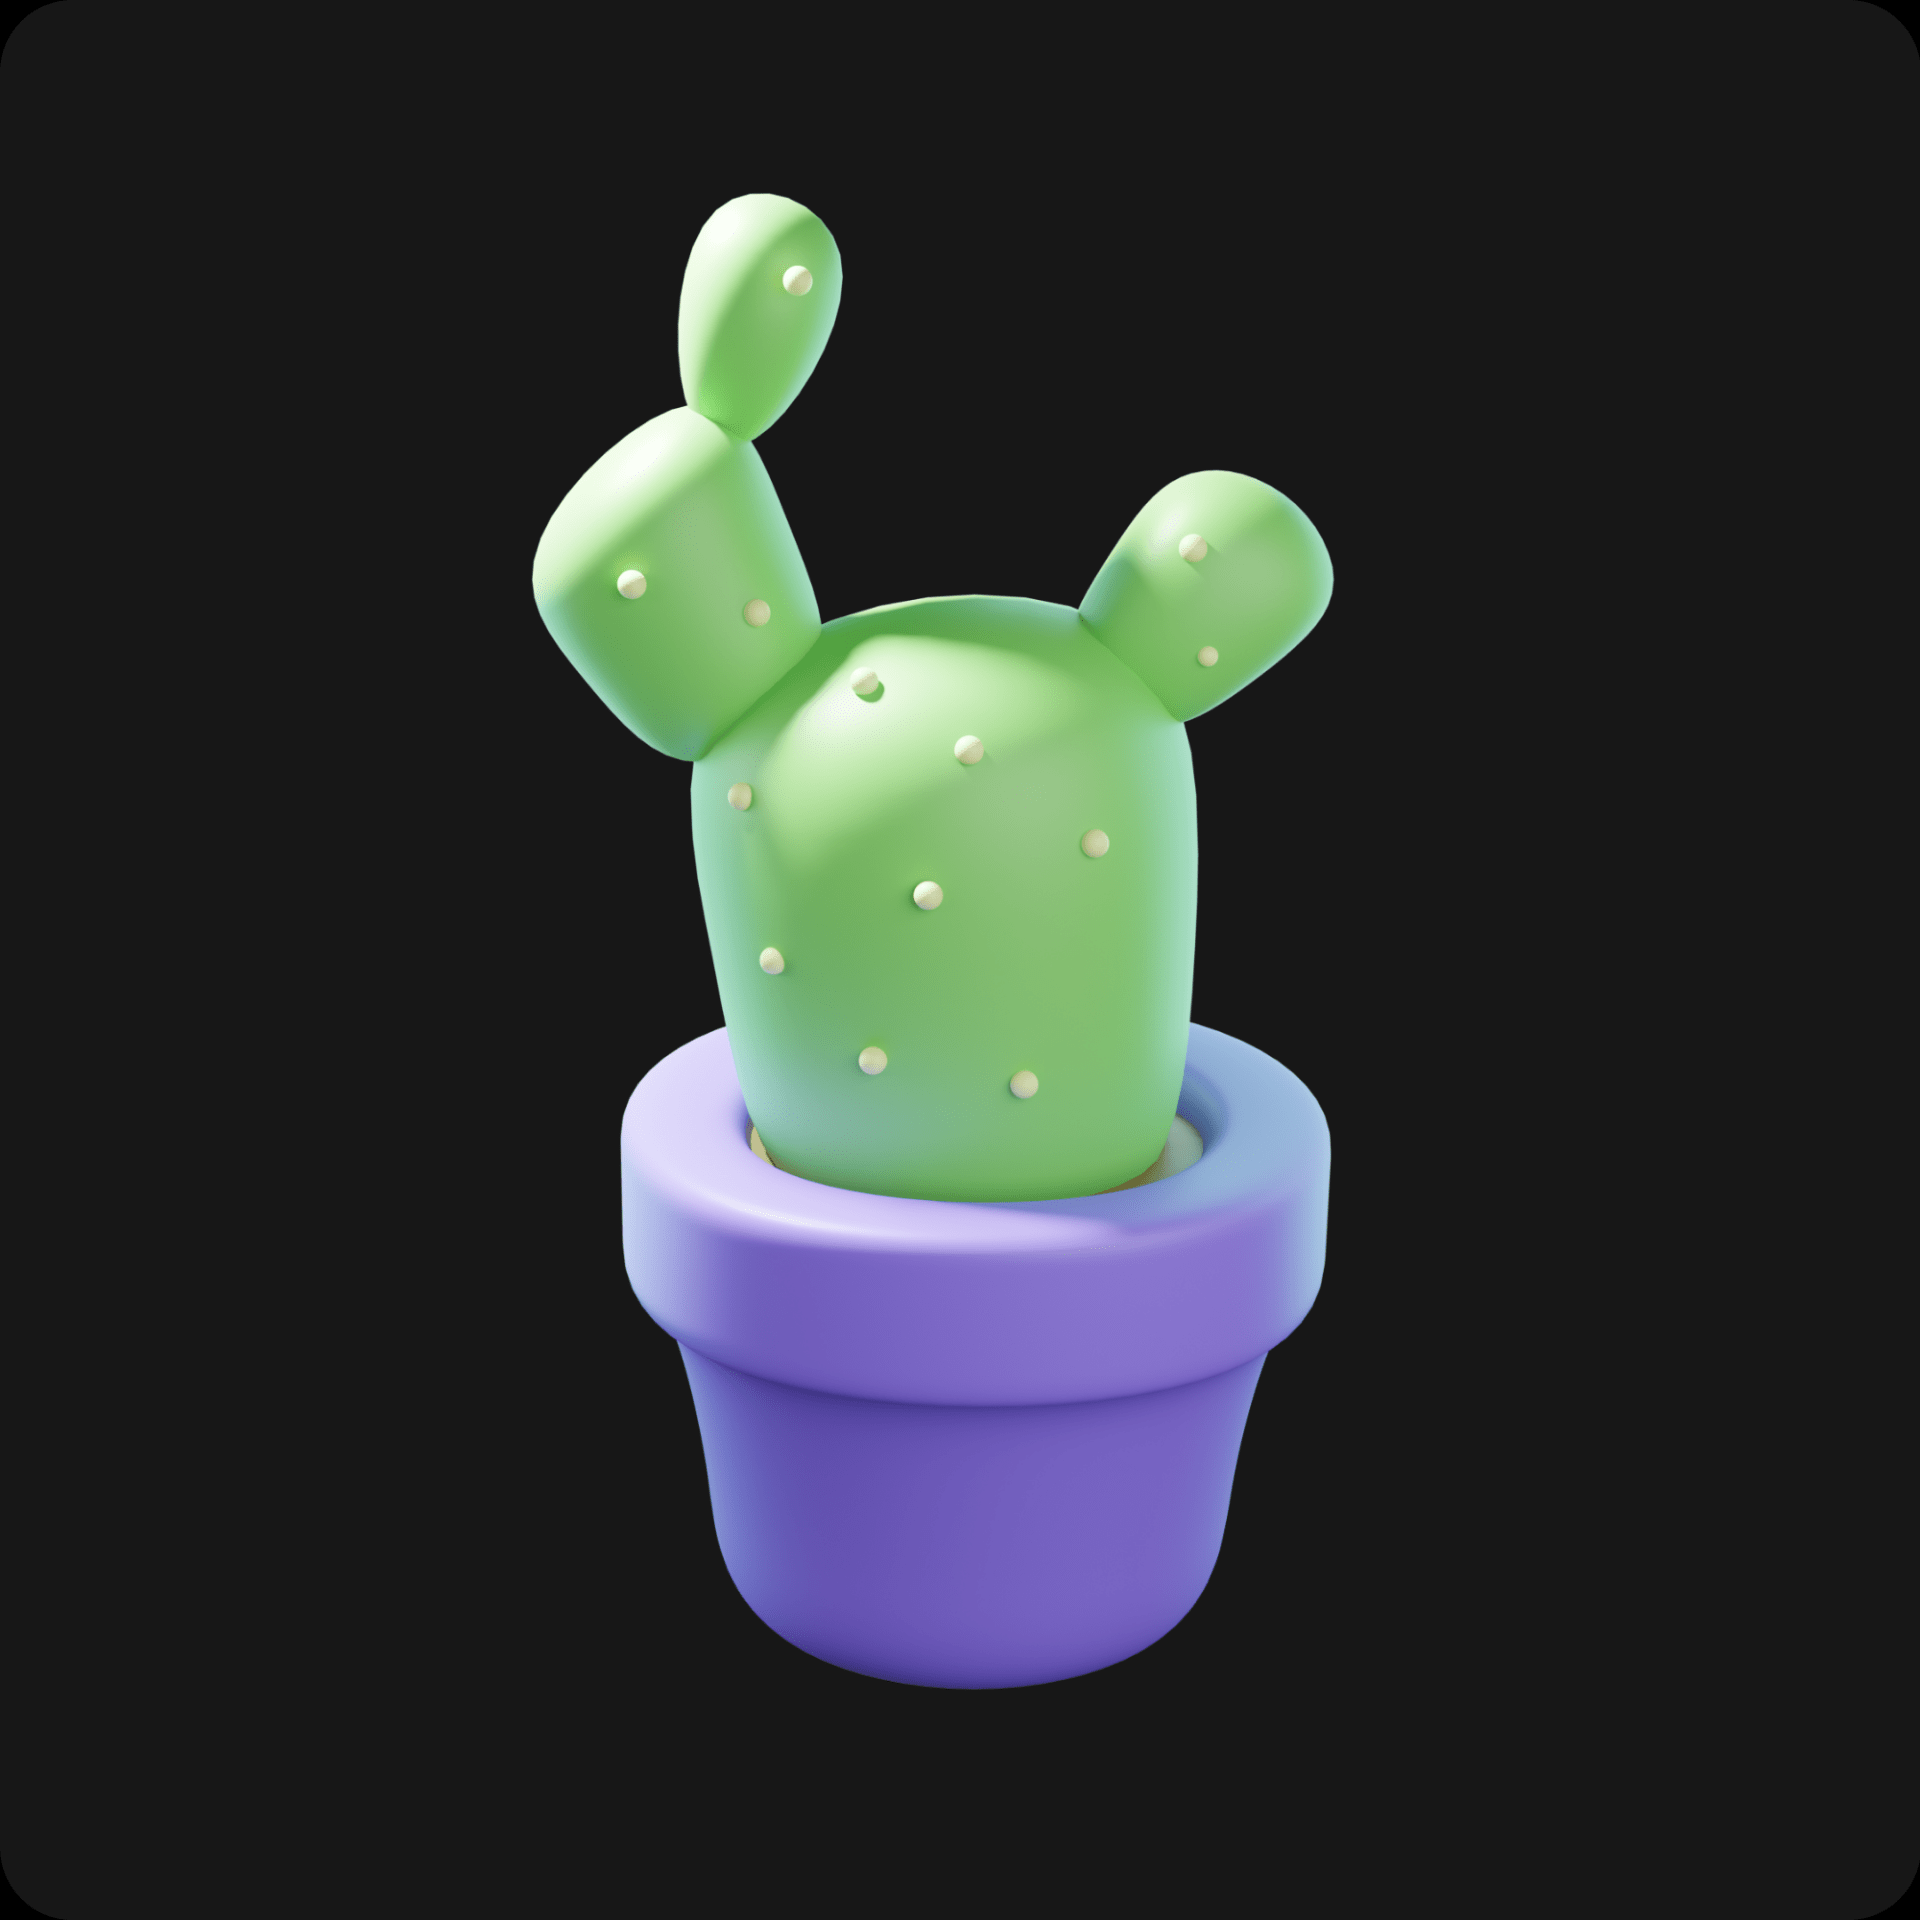 plant-pot-3d-illustration